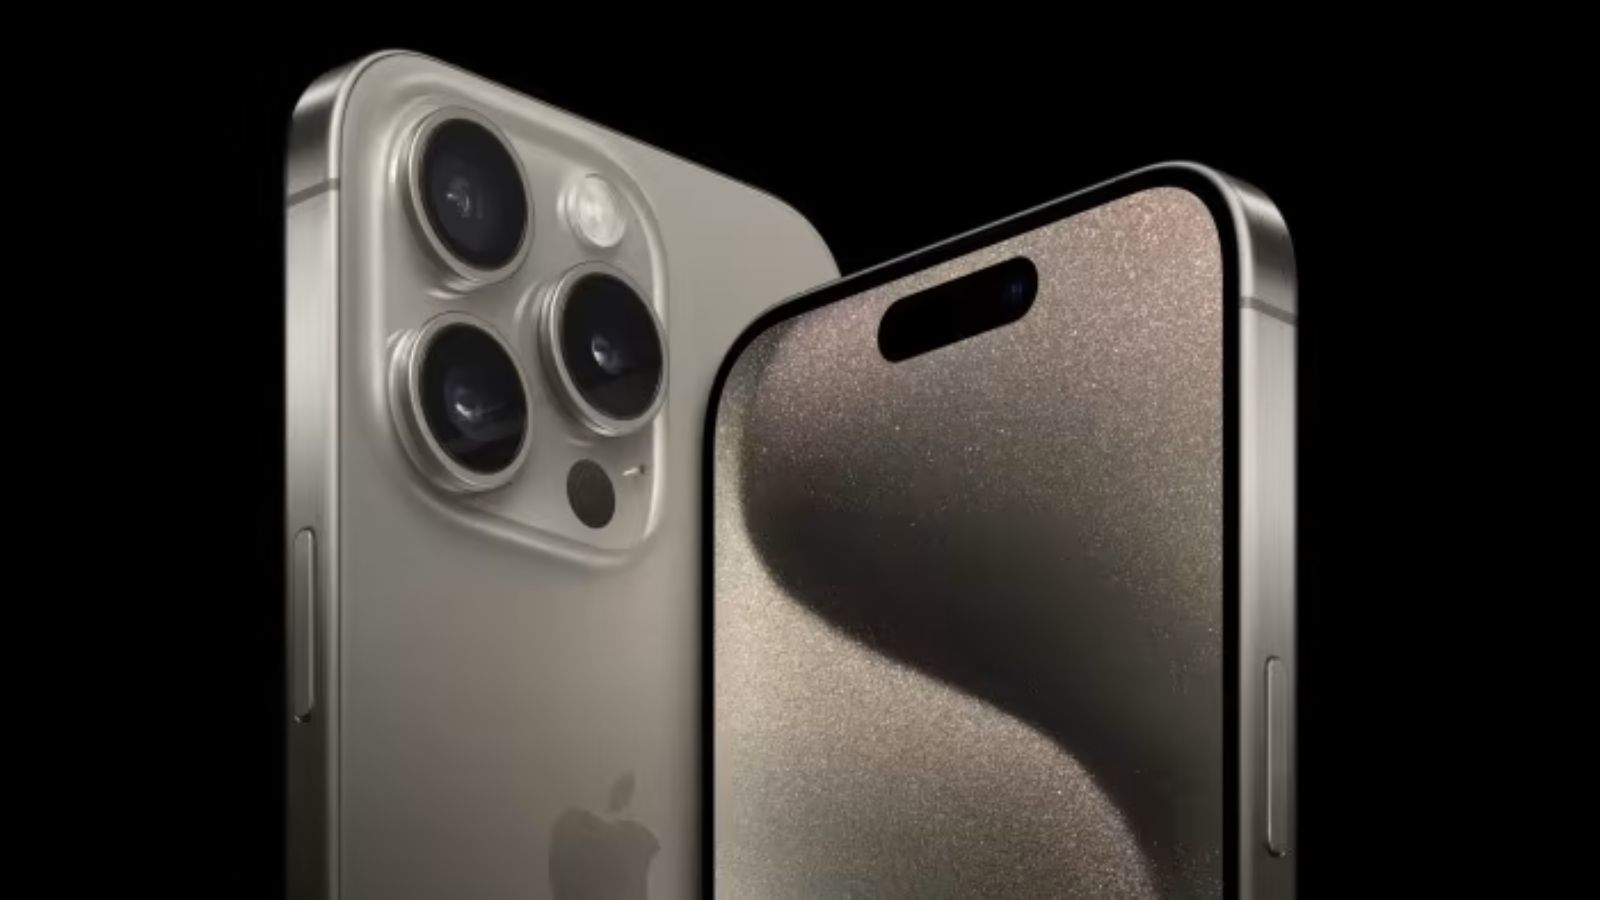 iPhone 15 Pro, molte unità stanno arrivando con alcuni difetti